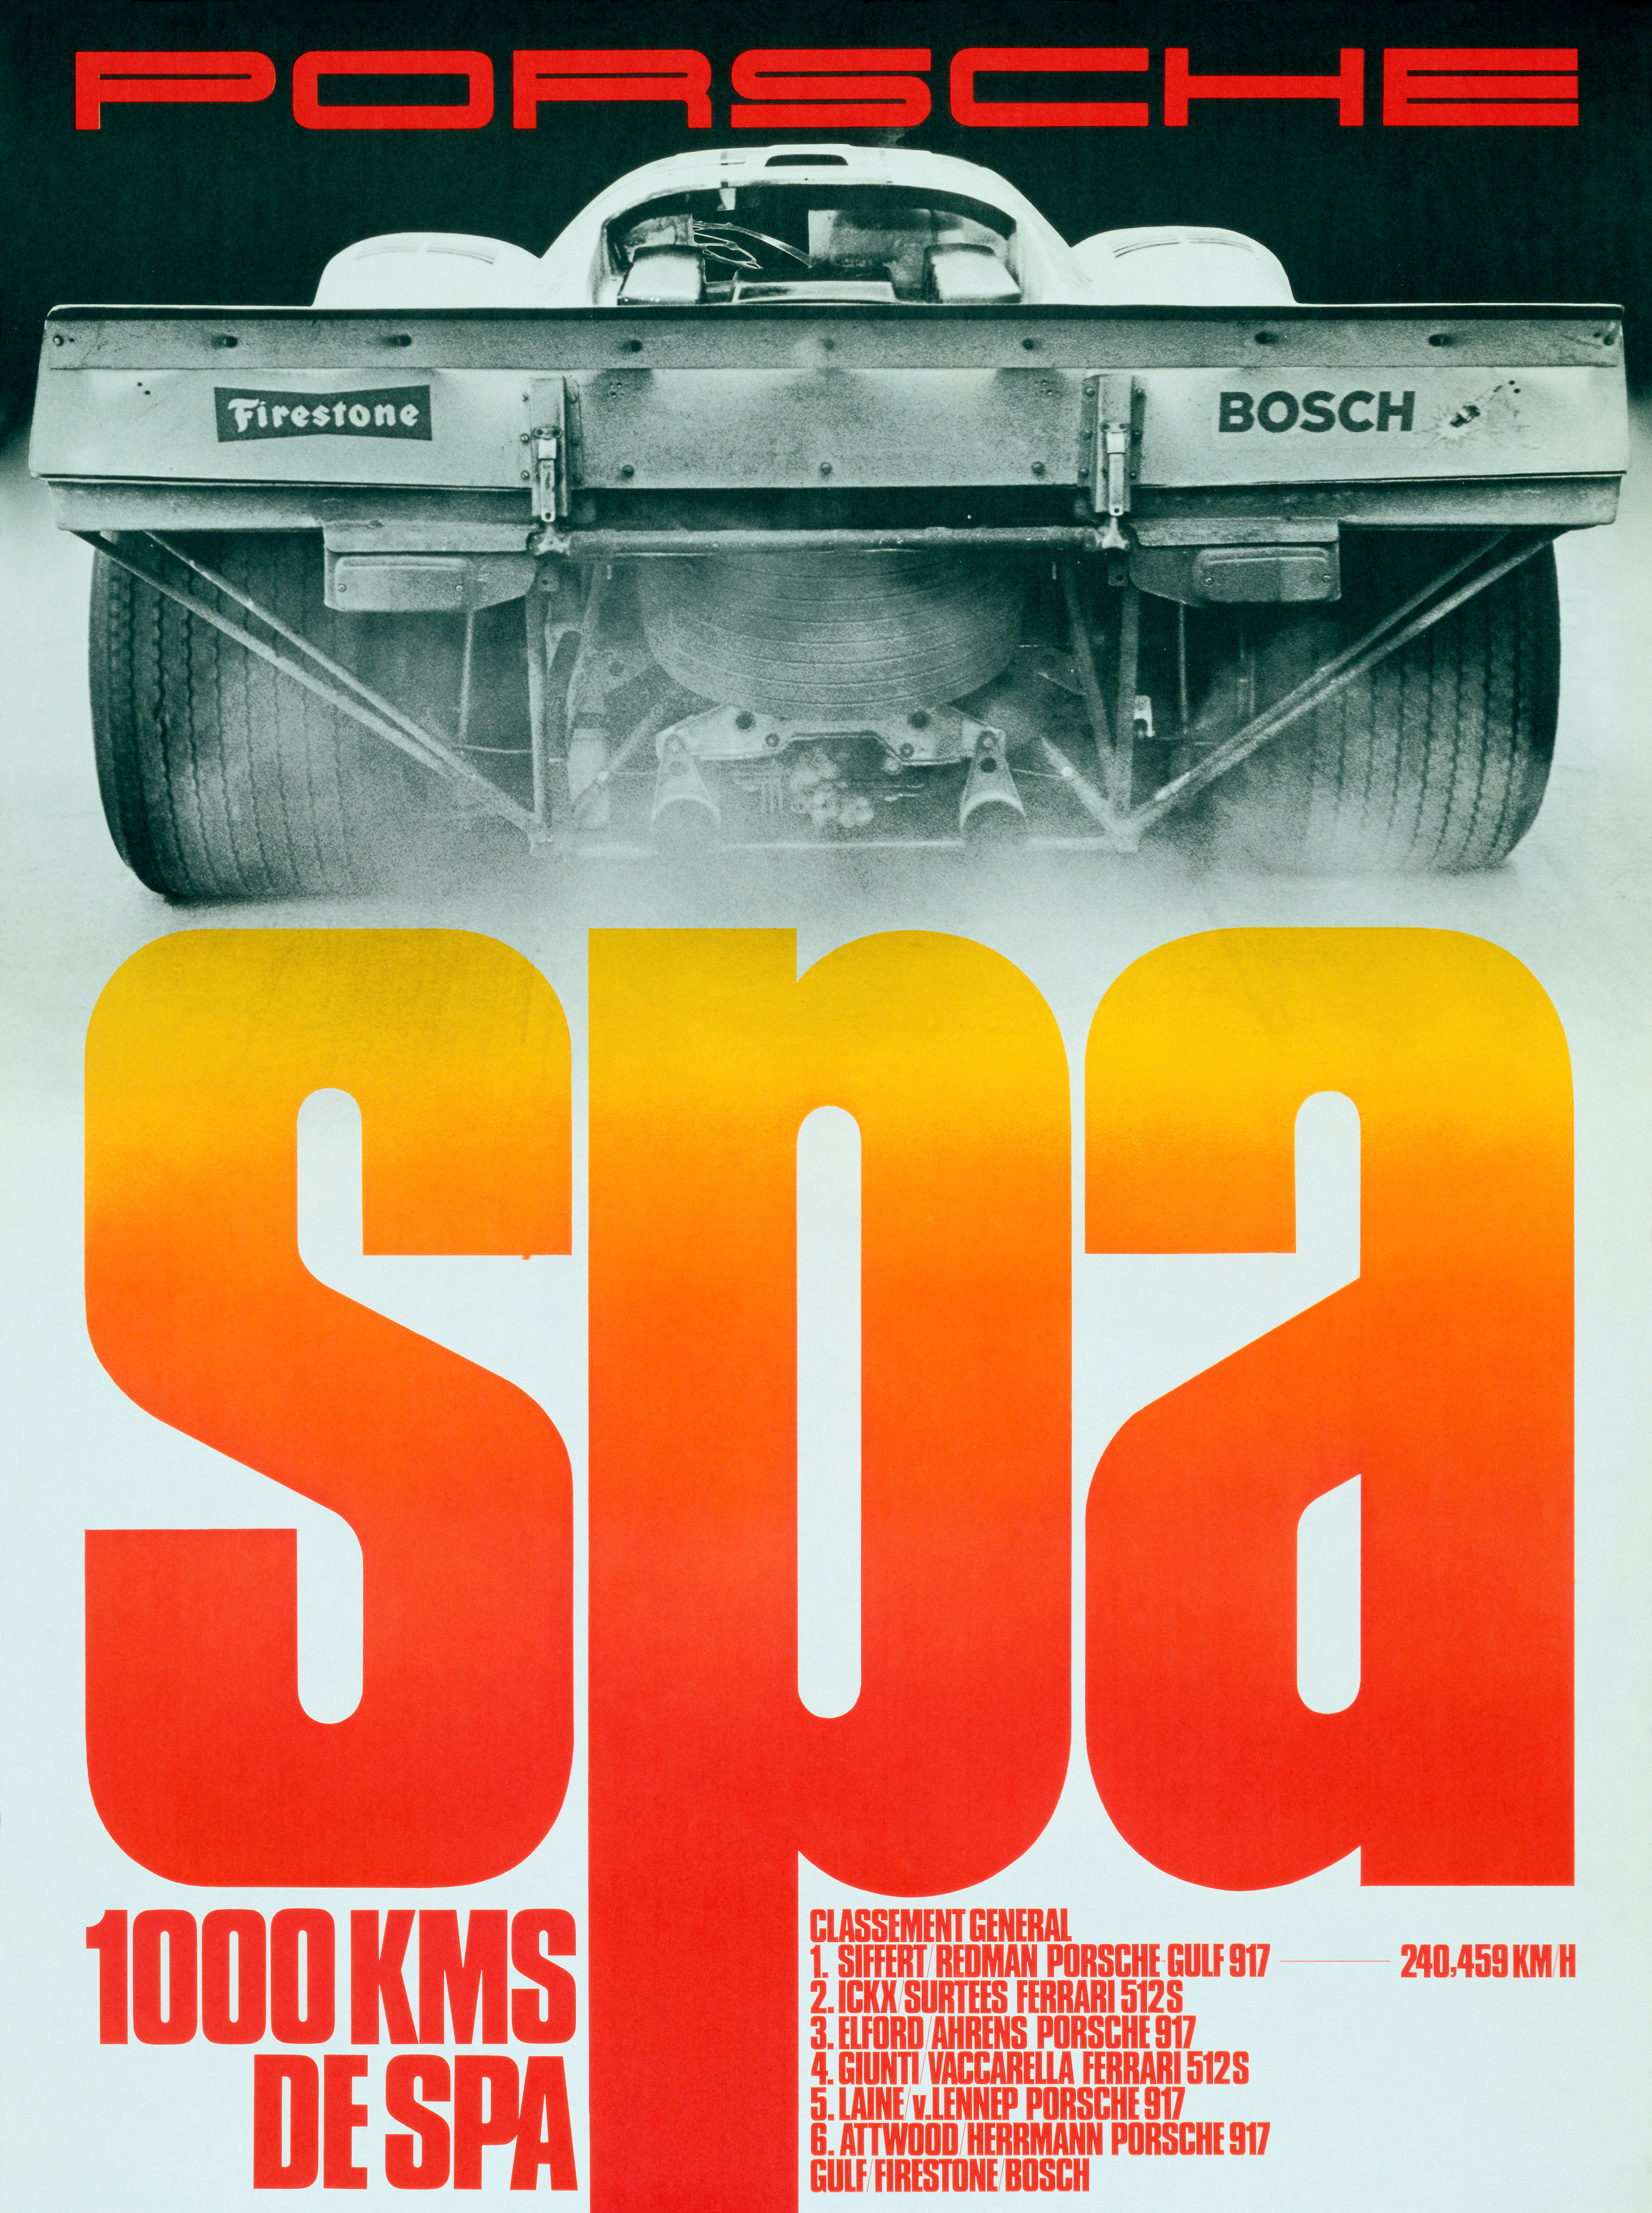 Racing poster by Erich Strenger, 2018, Porsche AG